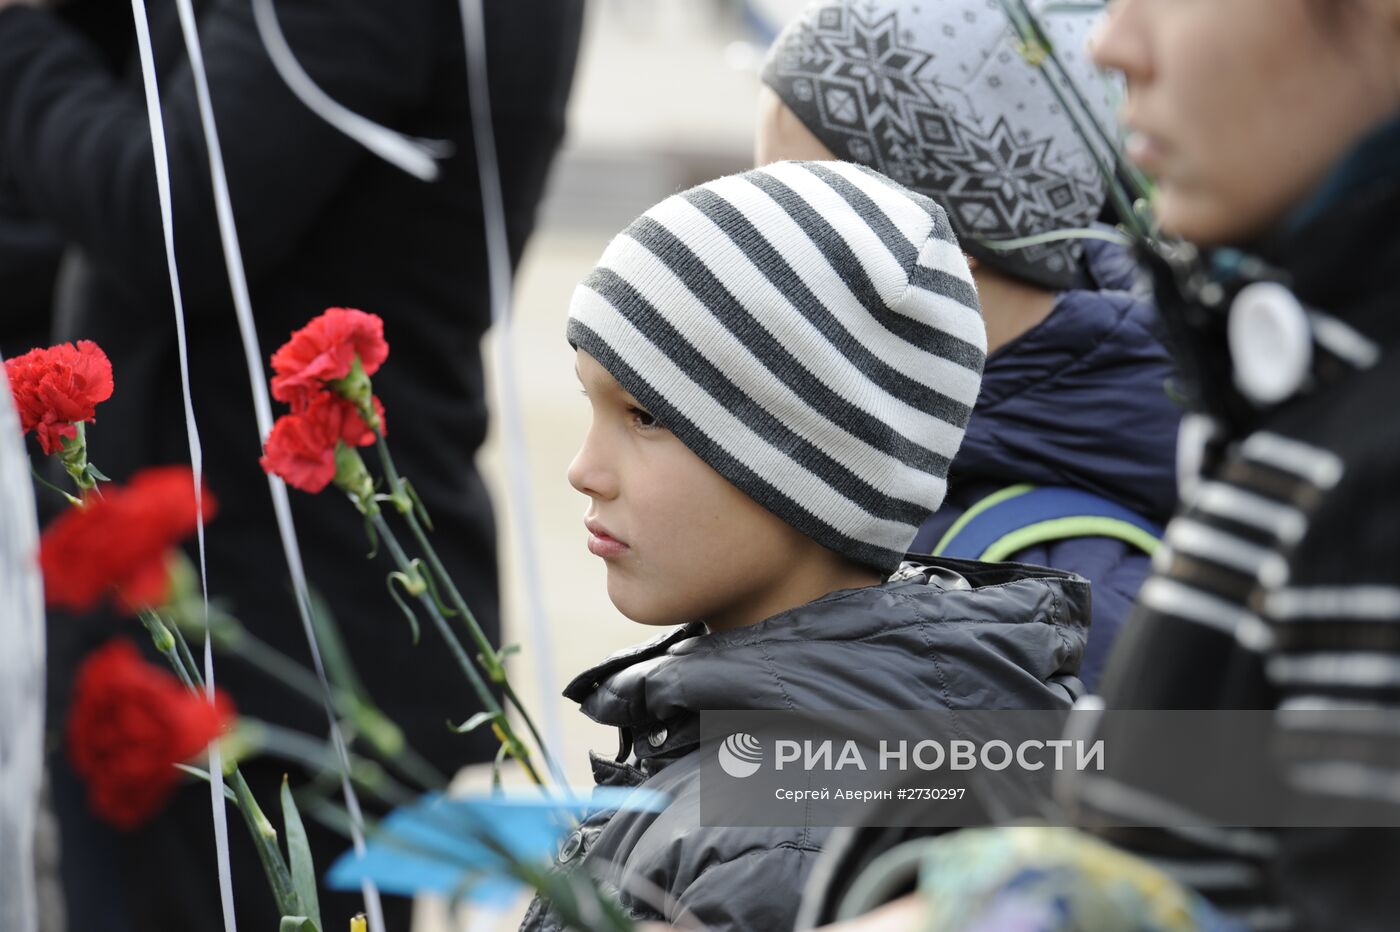 Митинг-реквием в Донецке по погибшим в авиакатастрофе, произошедшей в Египте